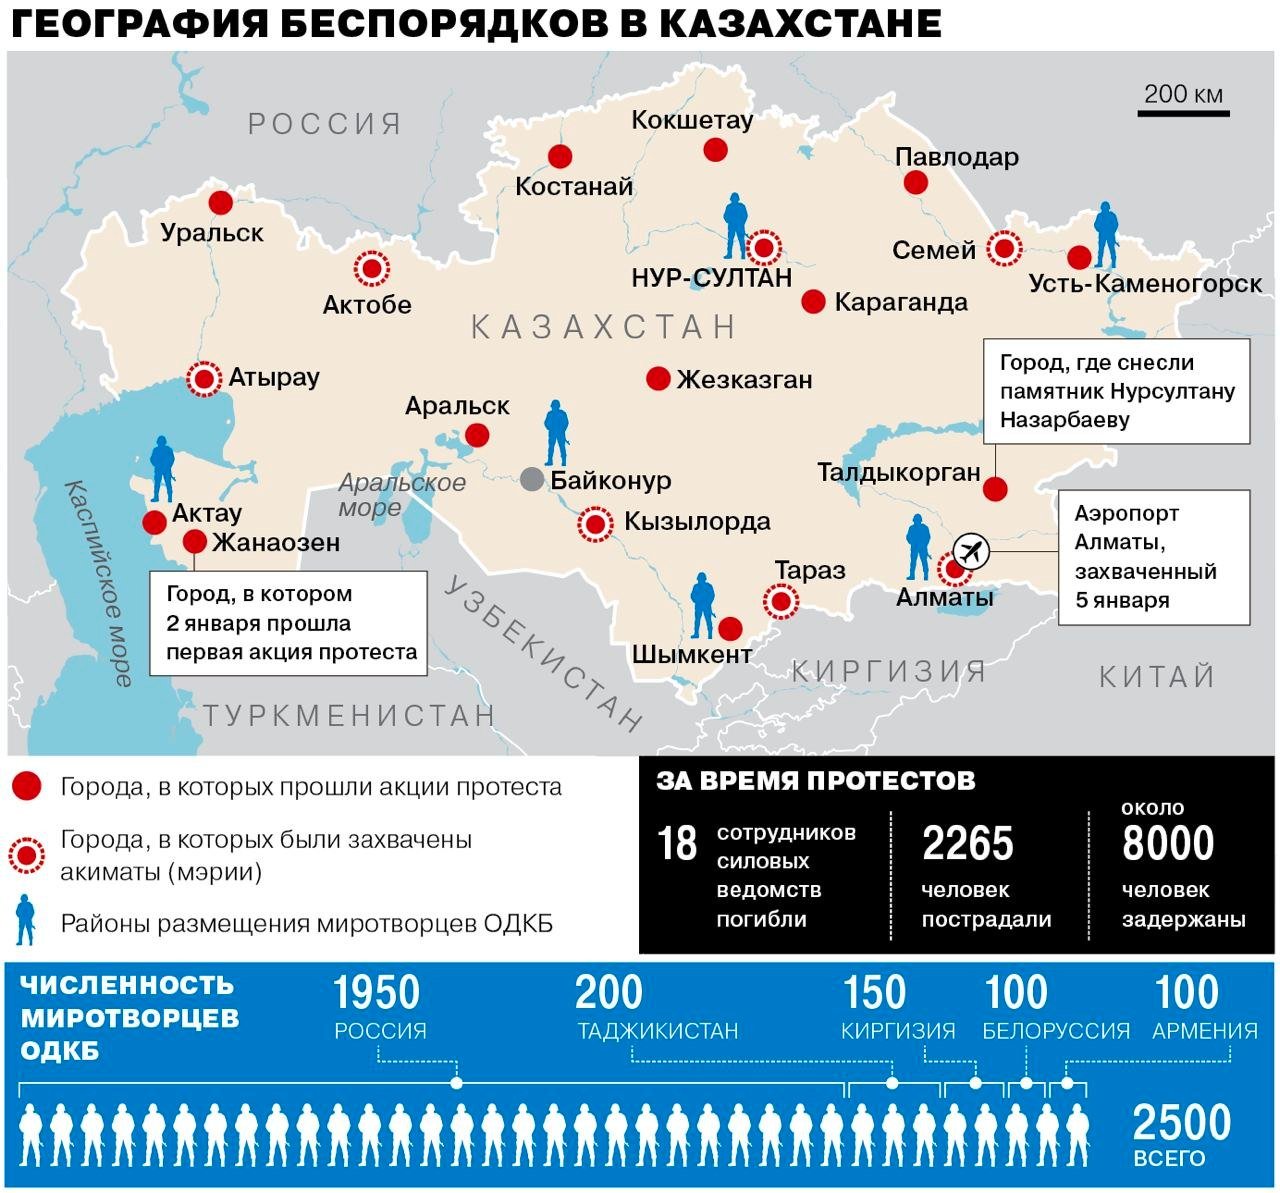 Predsjednik Kazahstana zatražio voju intervenciju Rusije: Ovo je napad sa zapada - Page 13 FIuiX9_XEAQCOb3?format=jpg&name=large